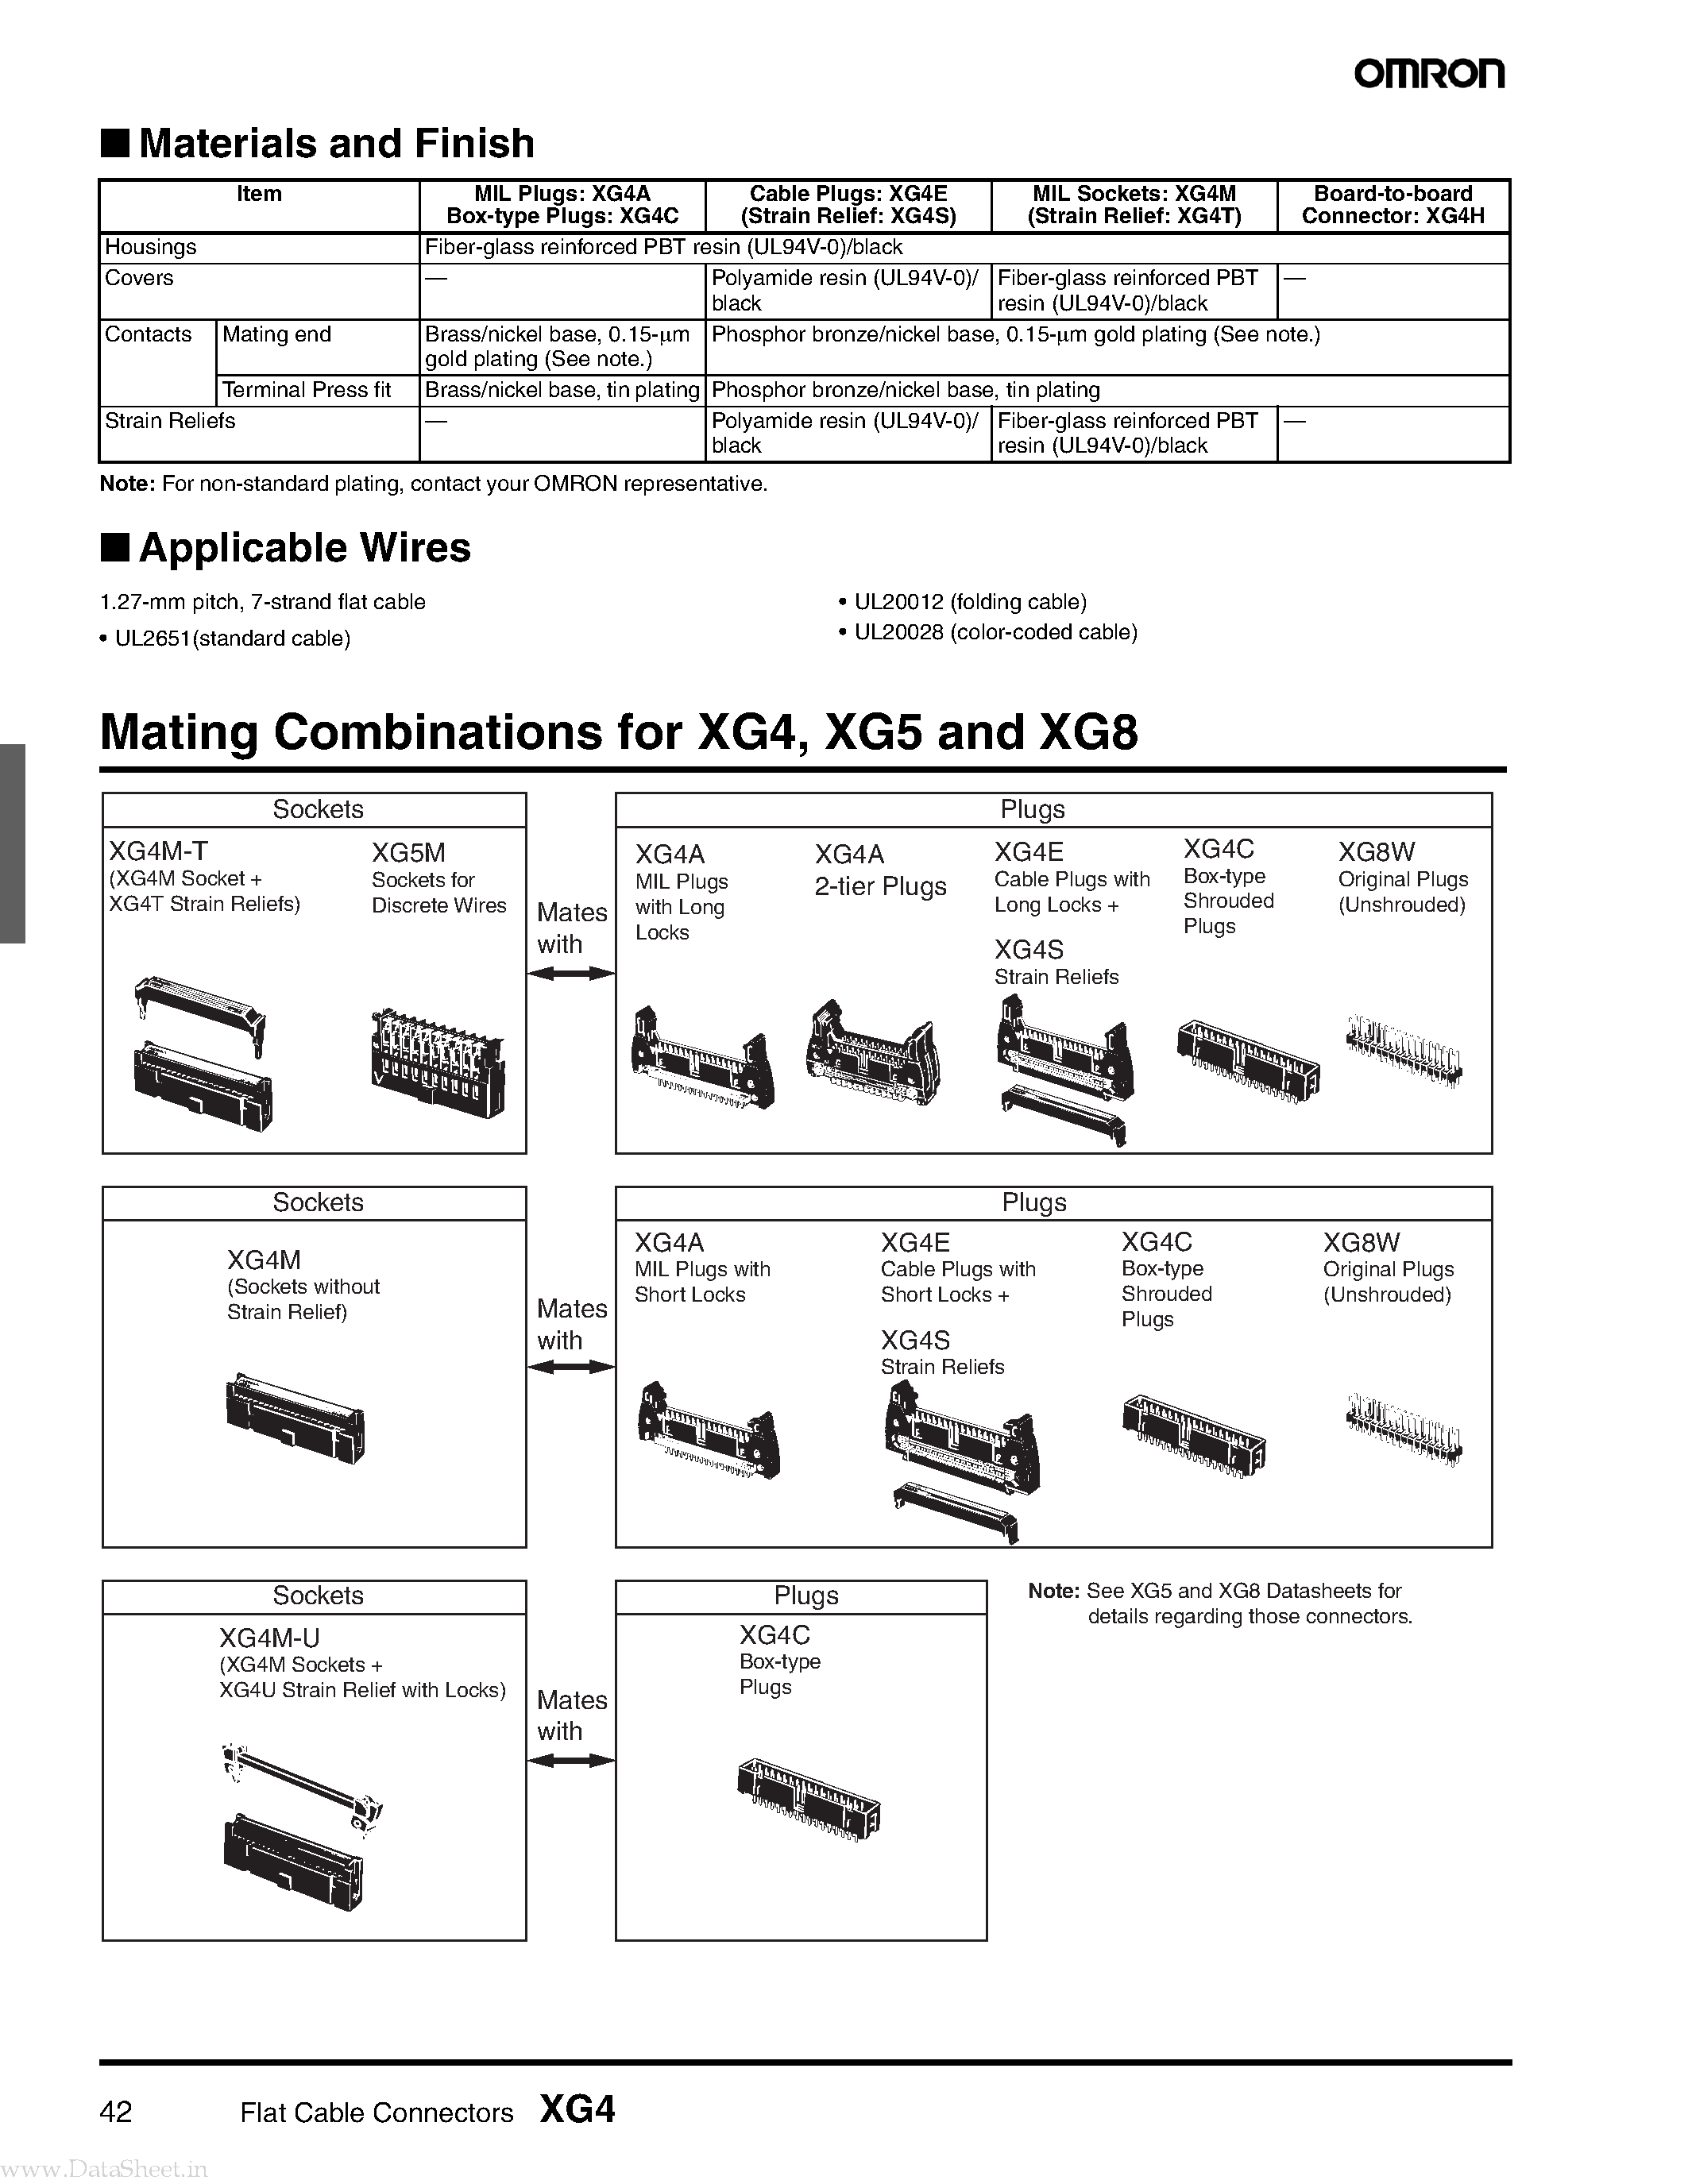 Даташит XG4 - Flat Cable Connectors страница 2